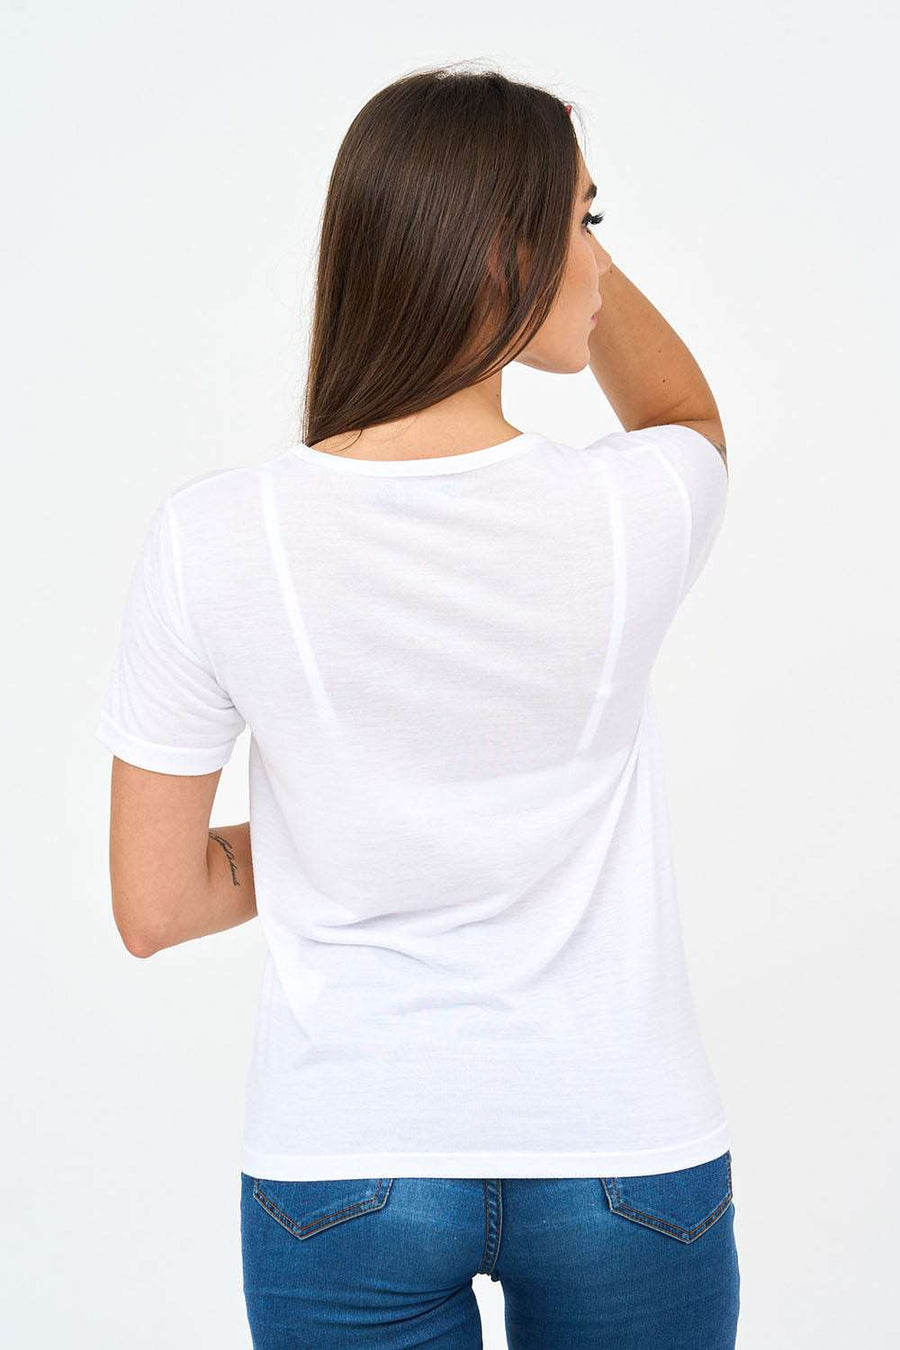 Short-Sleeved V Neck Women's T Shirt in White!